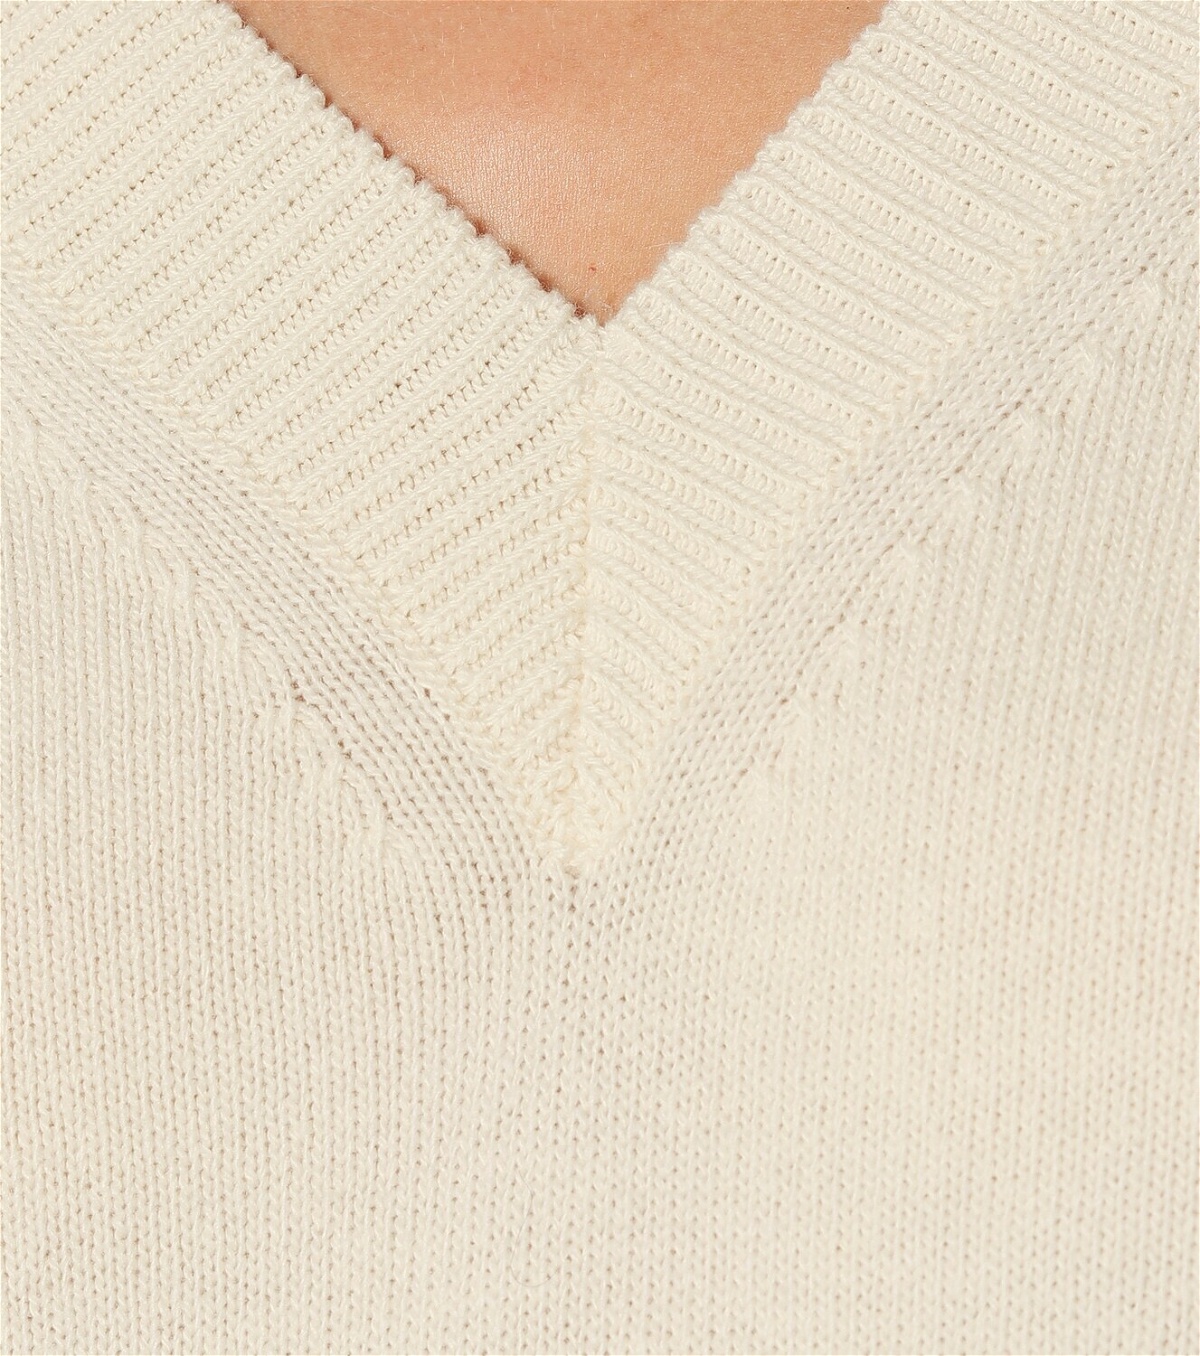 Dorothee Schumacher - Timeless Ease wool-blend sweater Dorothee Schumacher